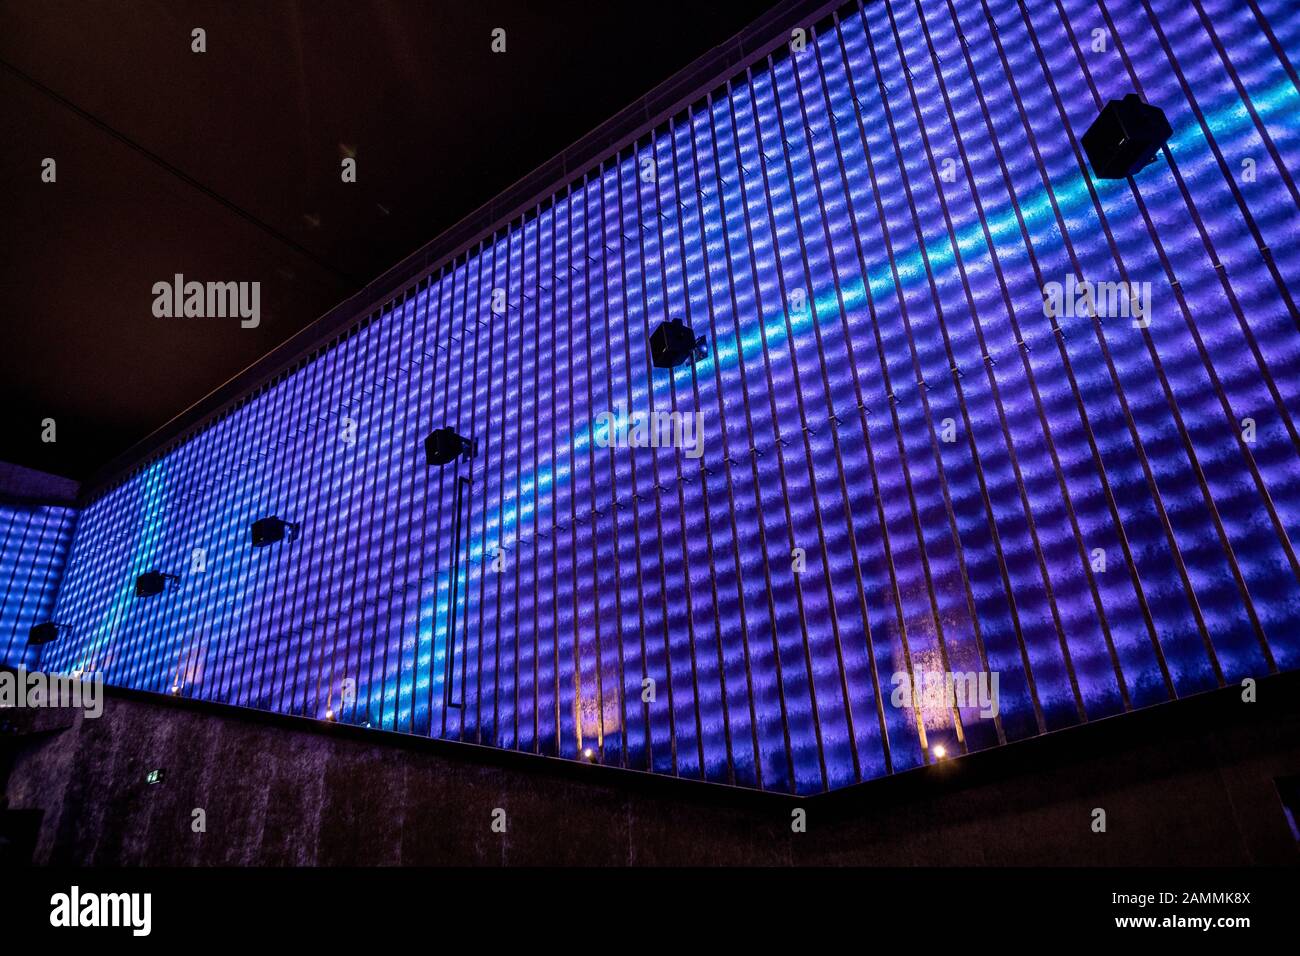 Eröffnung der neuen "Astor Film Lounge in der Arri" in der Türkenstraße 91 in Maxvorstadt. Das Bild zeigt eine LED-Wand in der großen Halle (Astor). [Automatisierte Übersetzung] Stockfoto